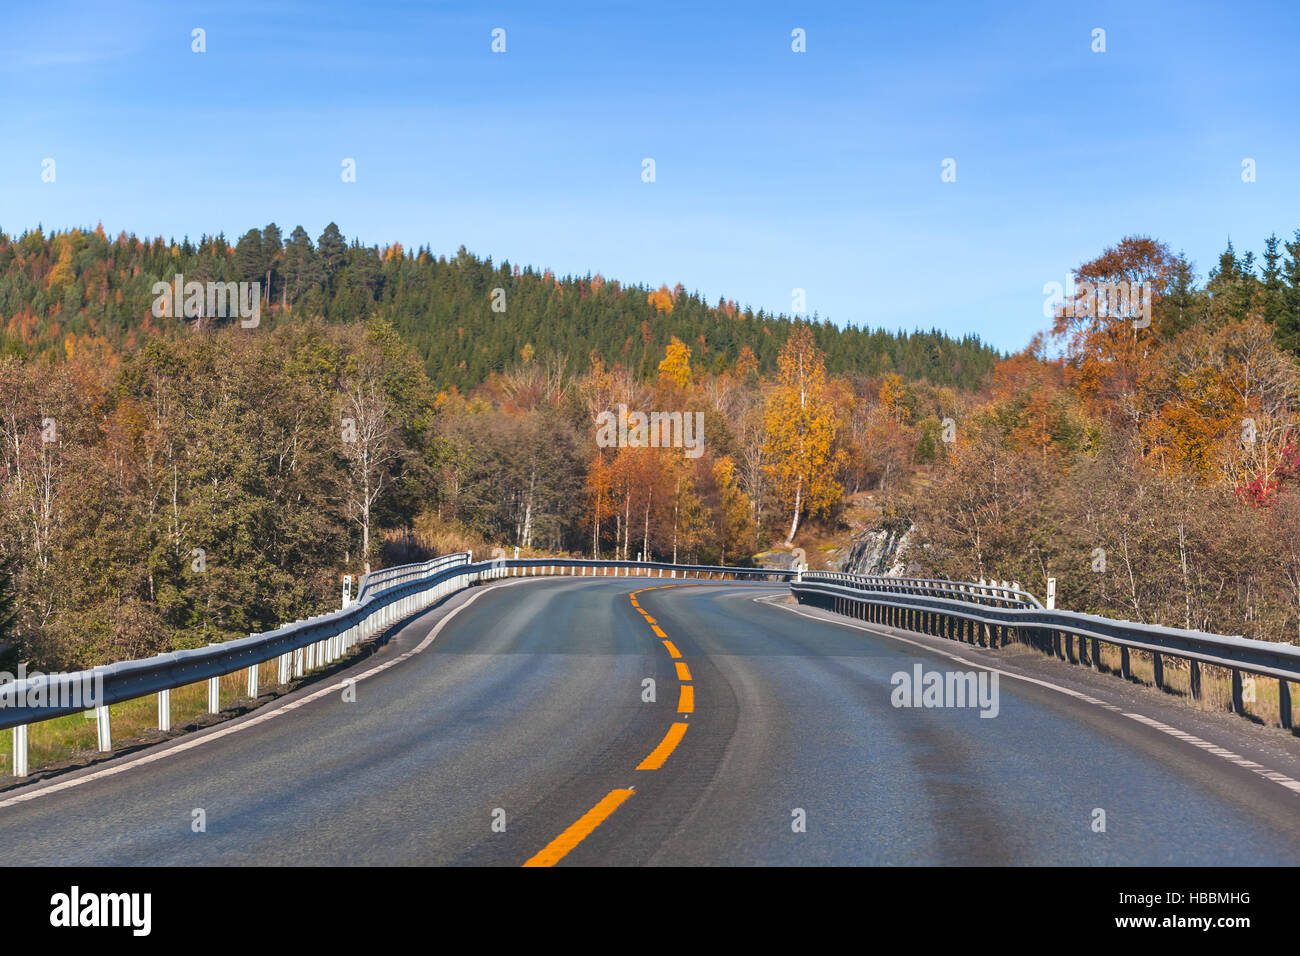 Drehen von ländlichen norwegischen Autobahn in Herbstsaison Stockfoto